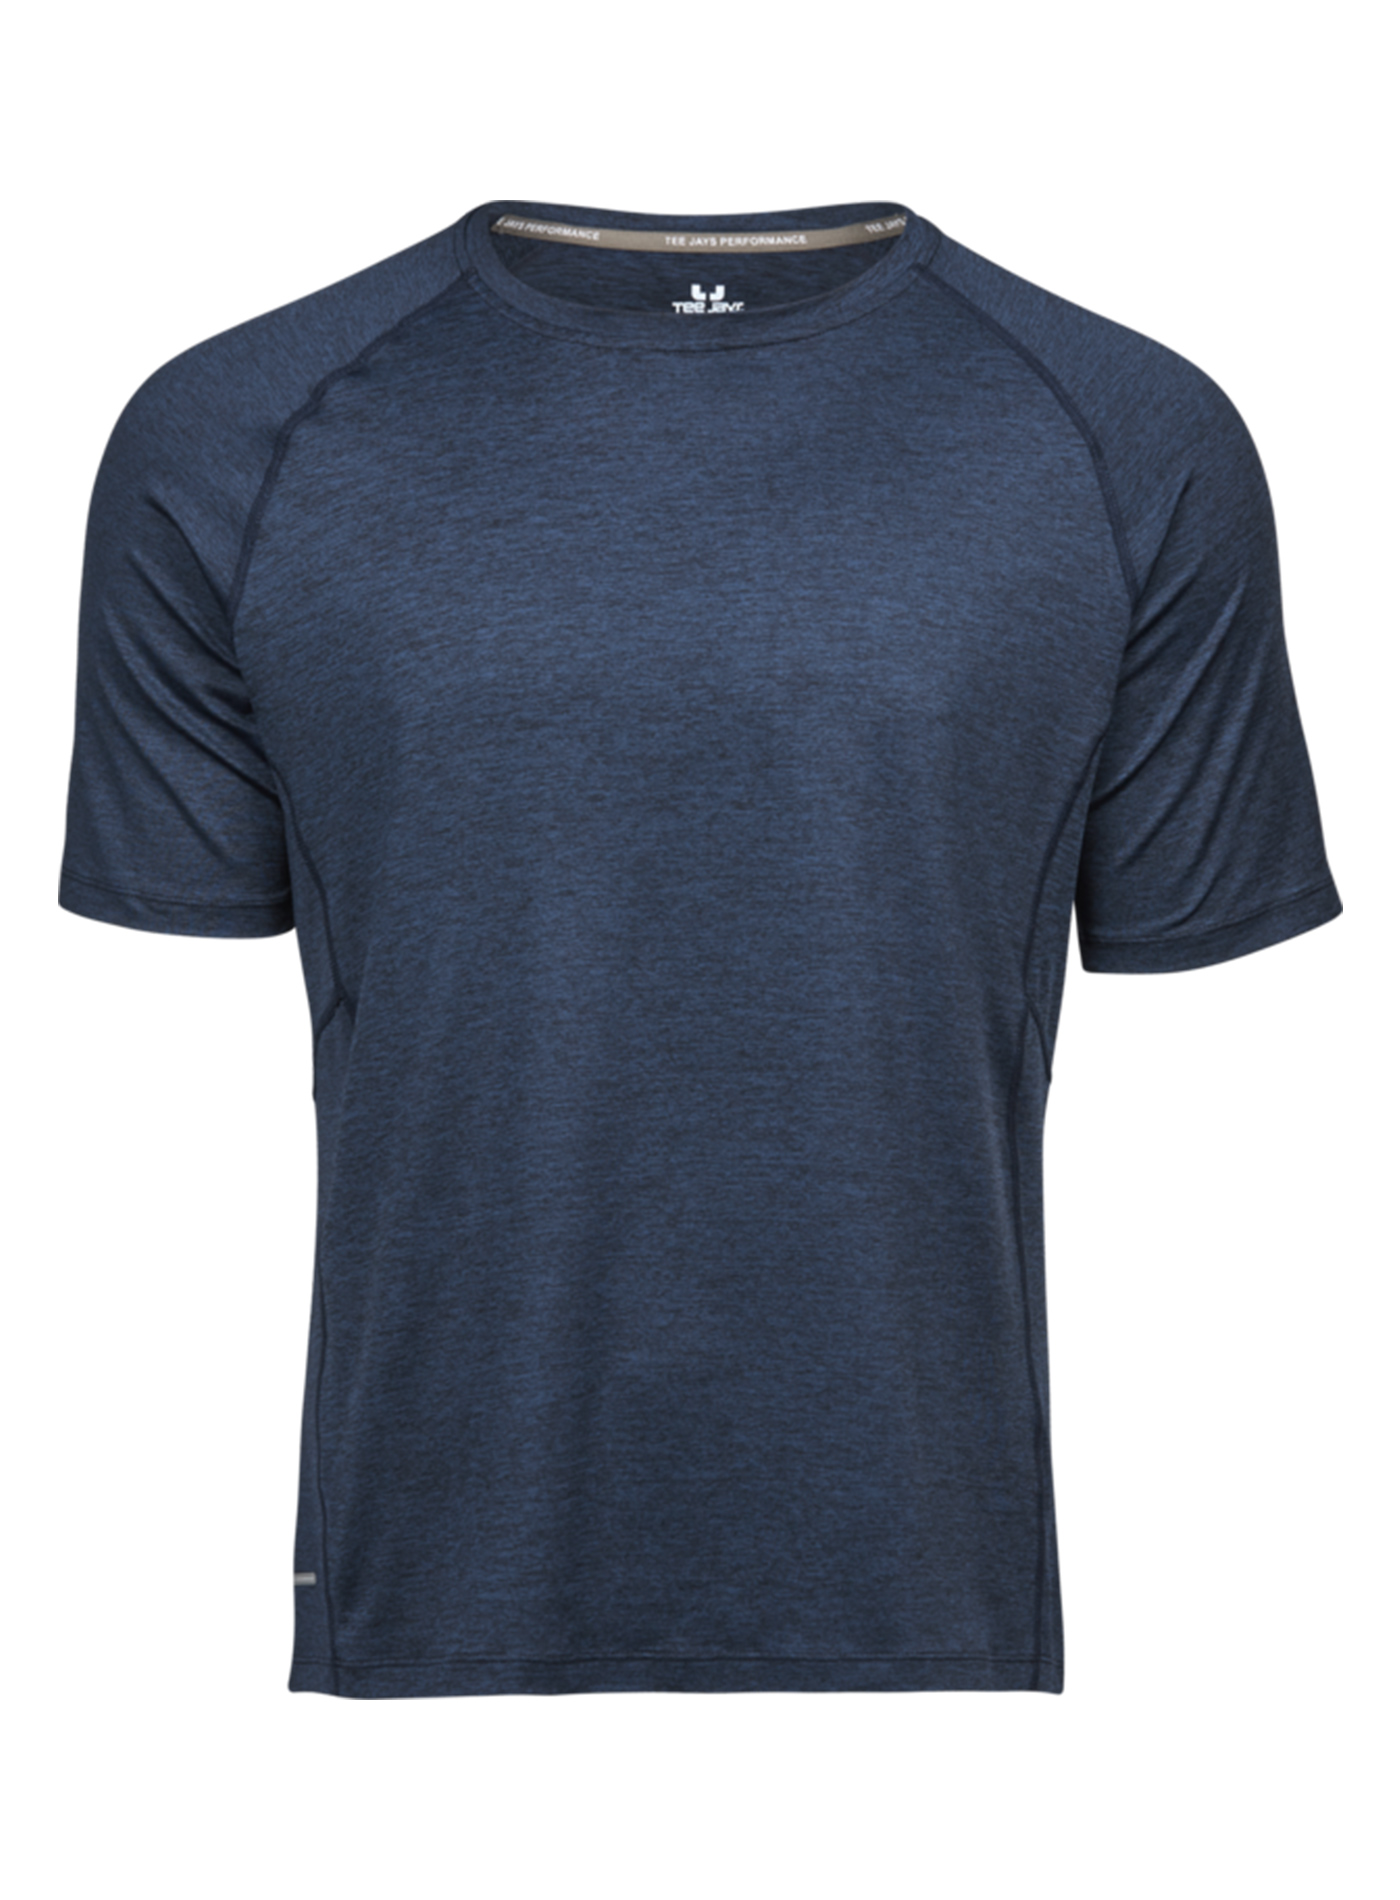 Pánské sportovní tričko cool dry Tee Jays - Námořnická modrá XL